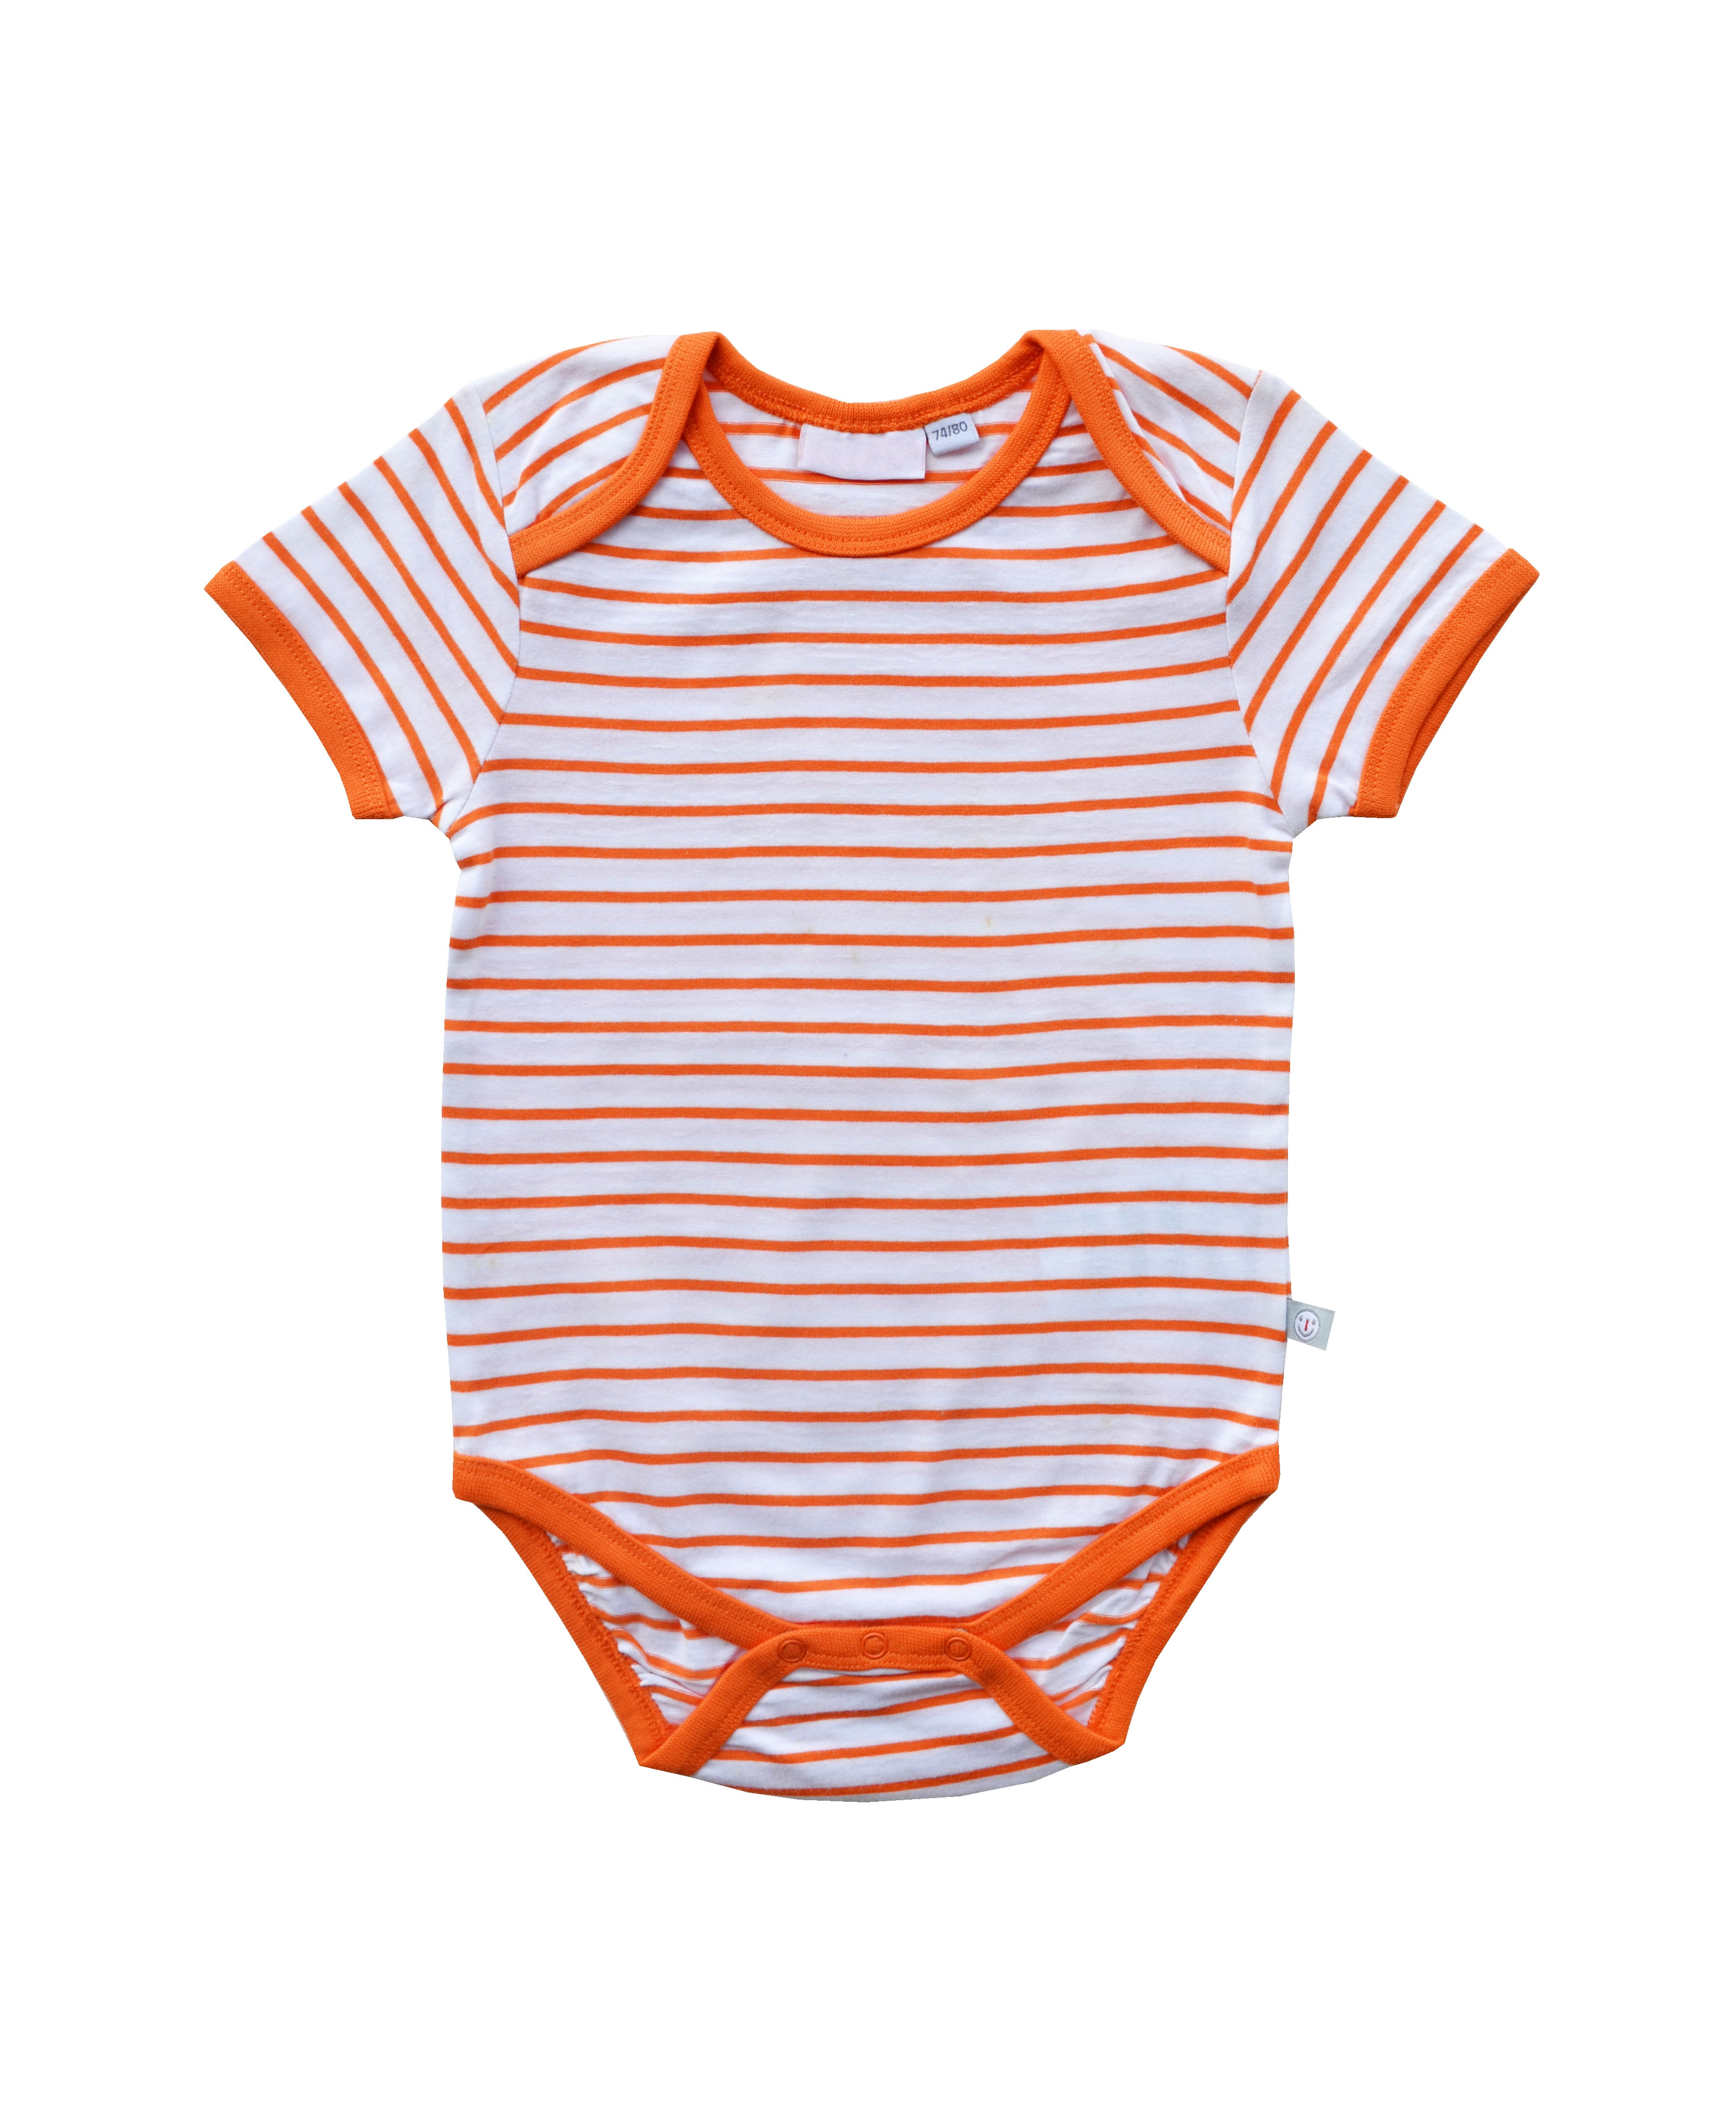 Babeez | Orange / White Stripe Bodysuit (100% Cotton Jersey) undefined